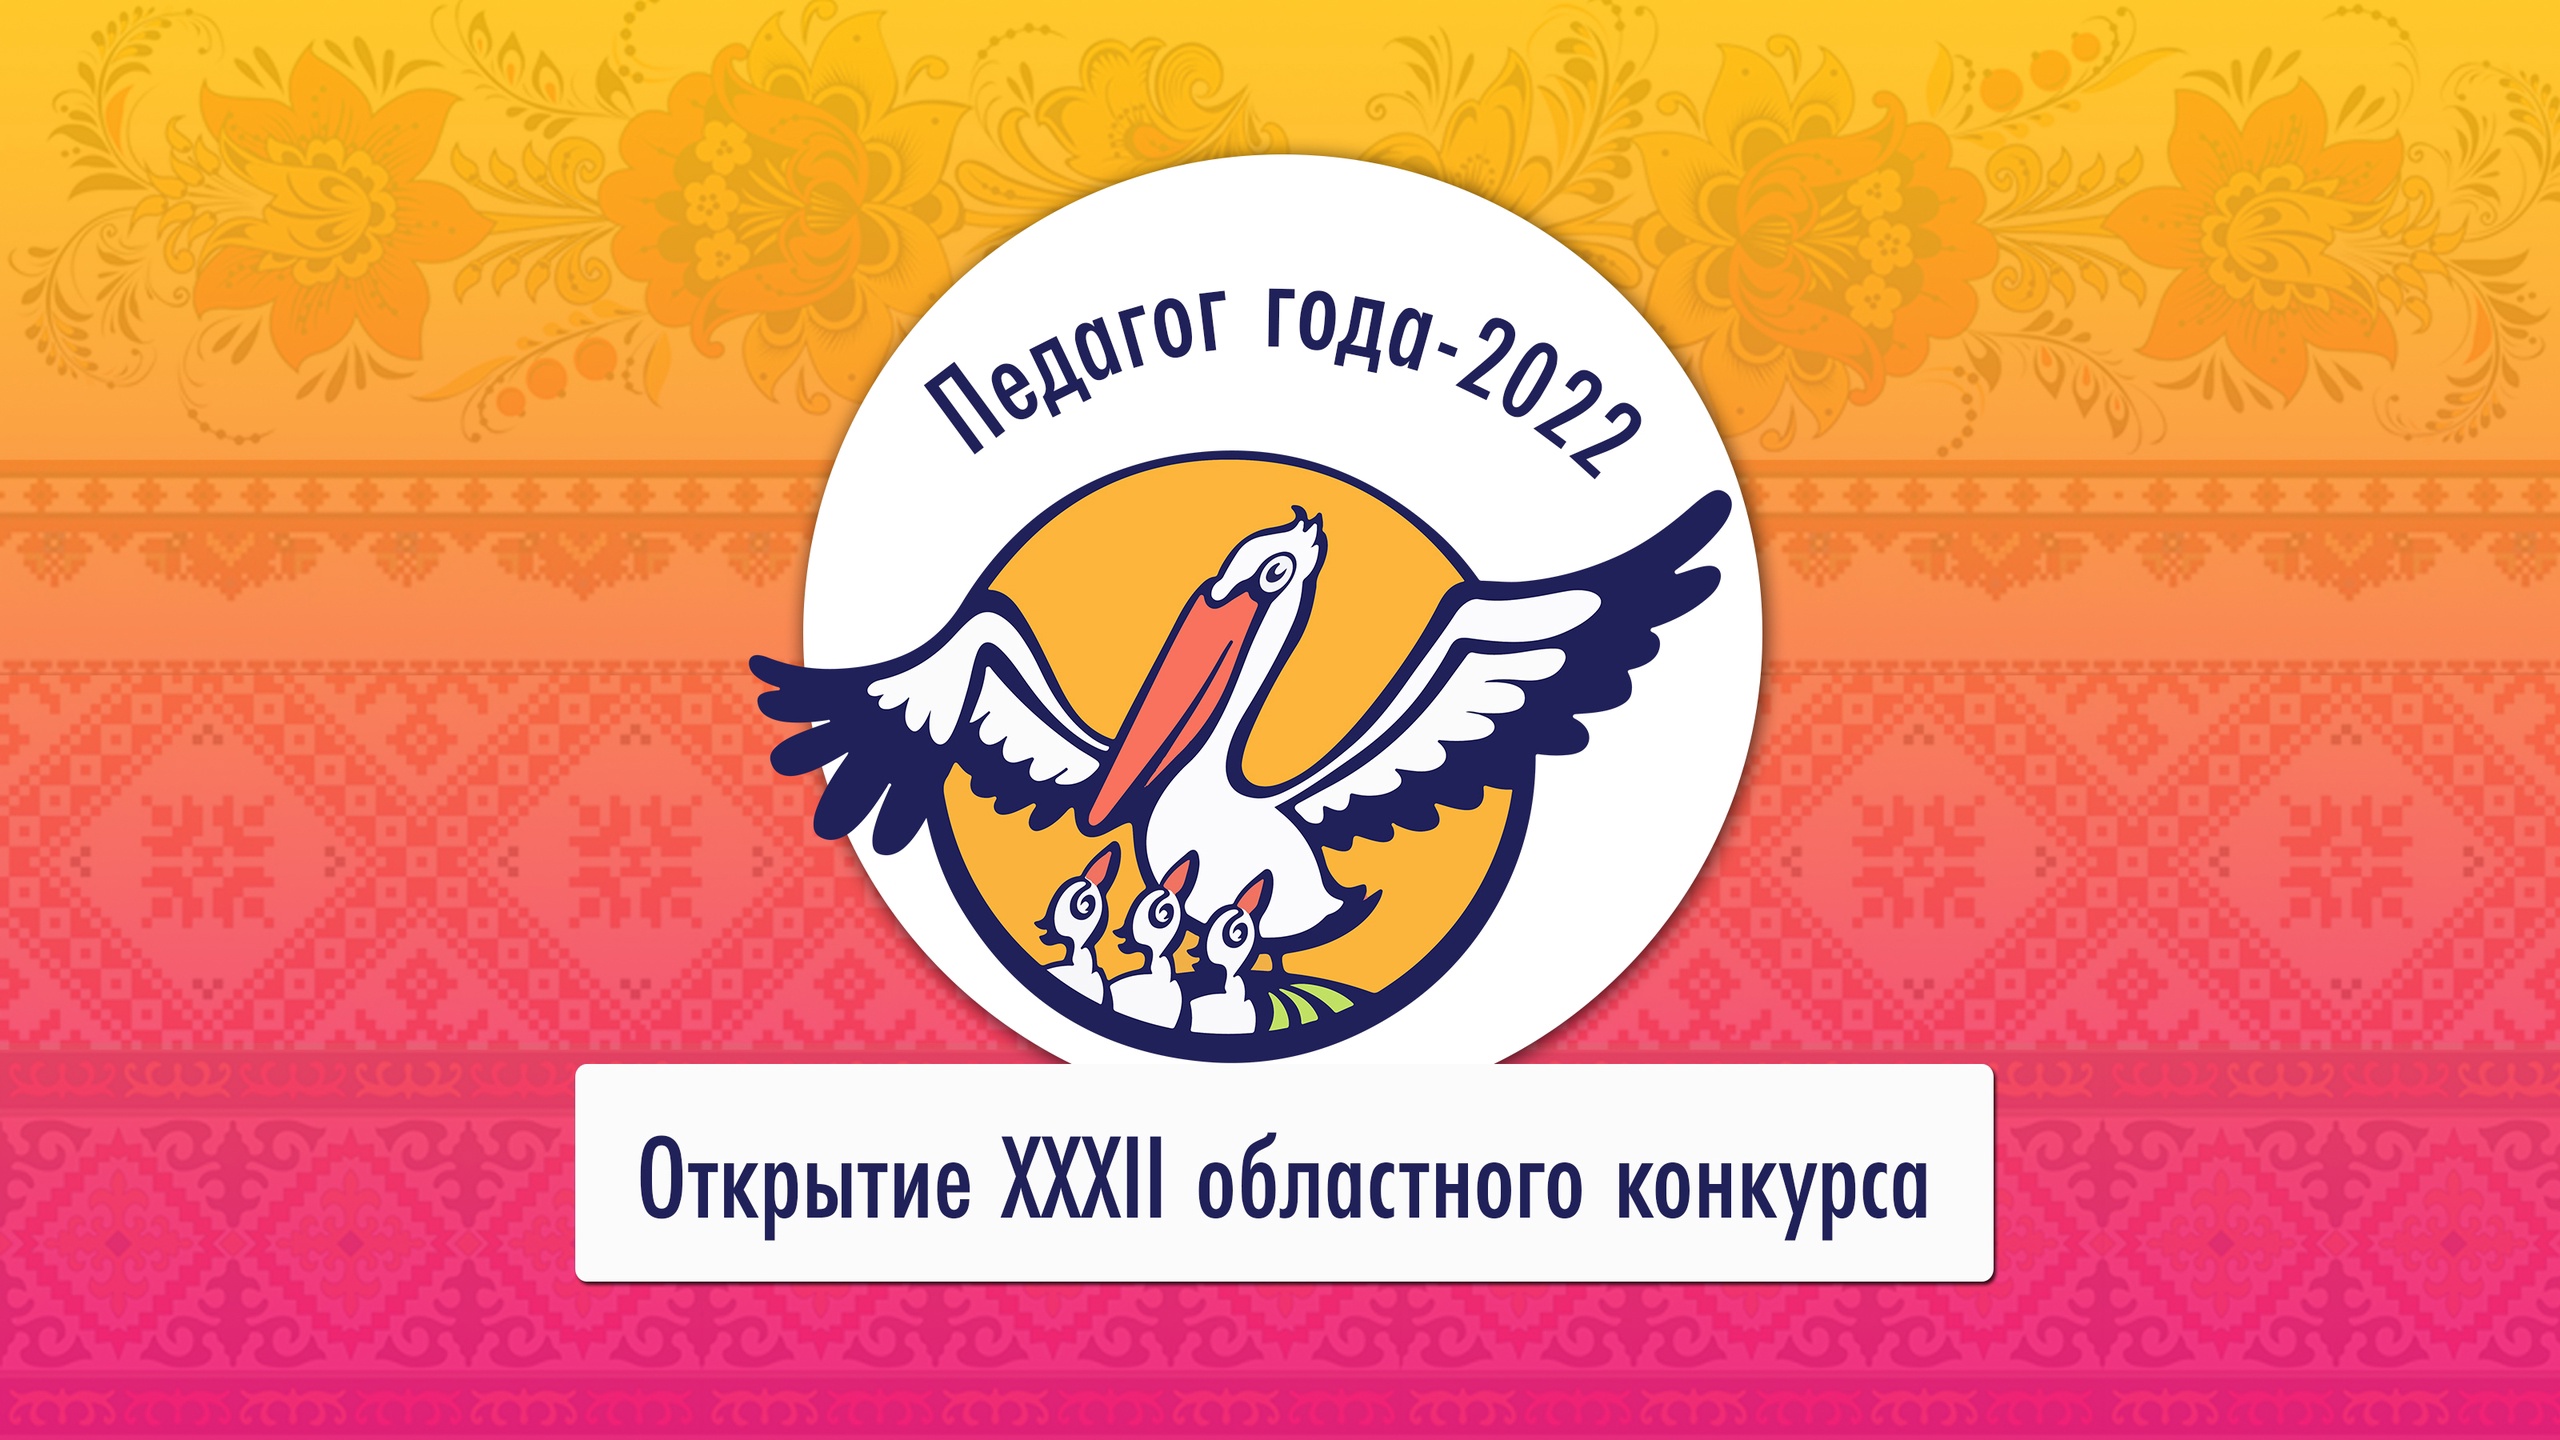 В Ивановской области стартовал региональный конкурс «Педагог года»